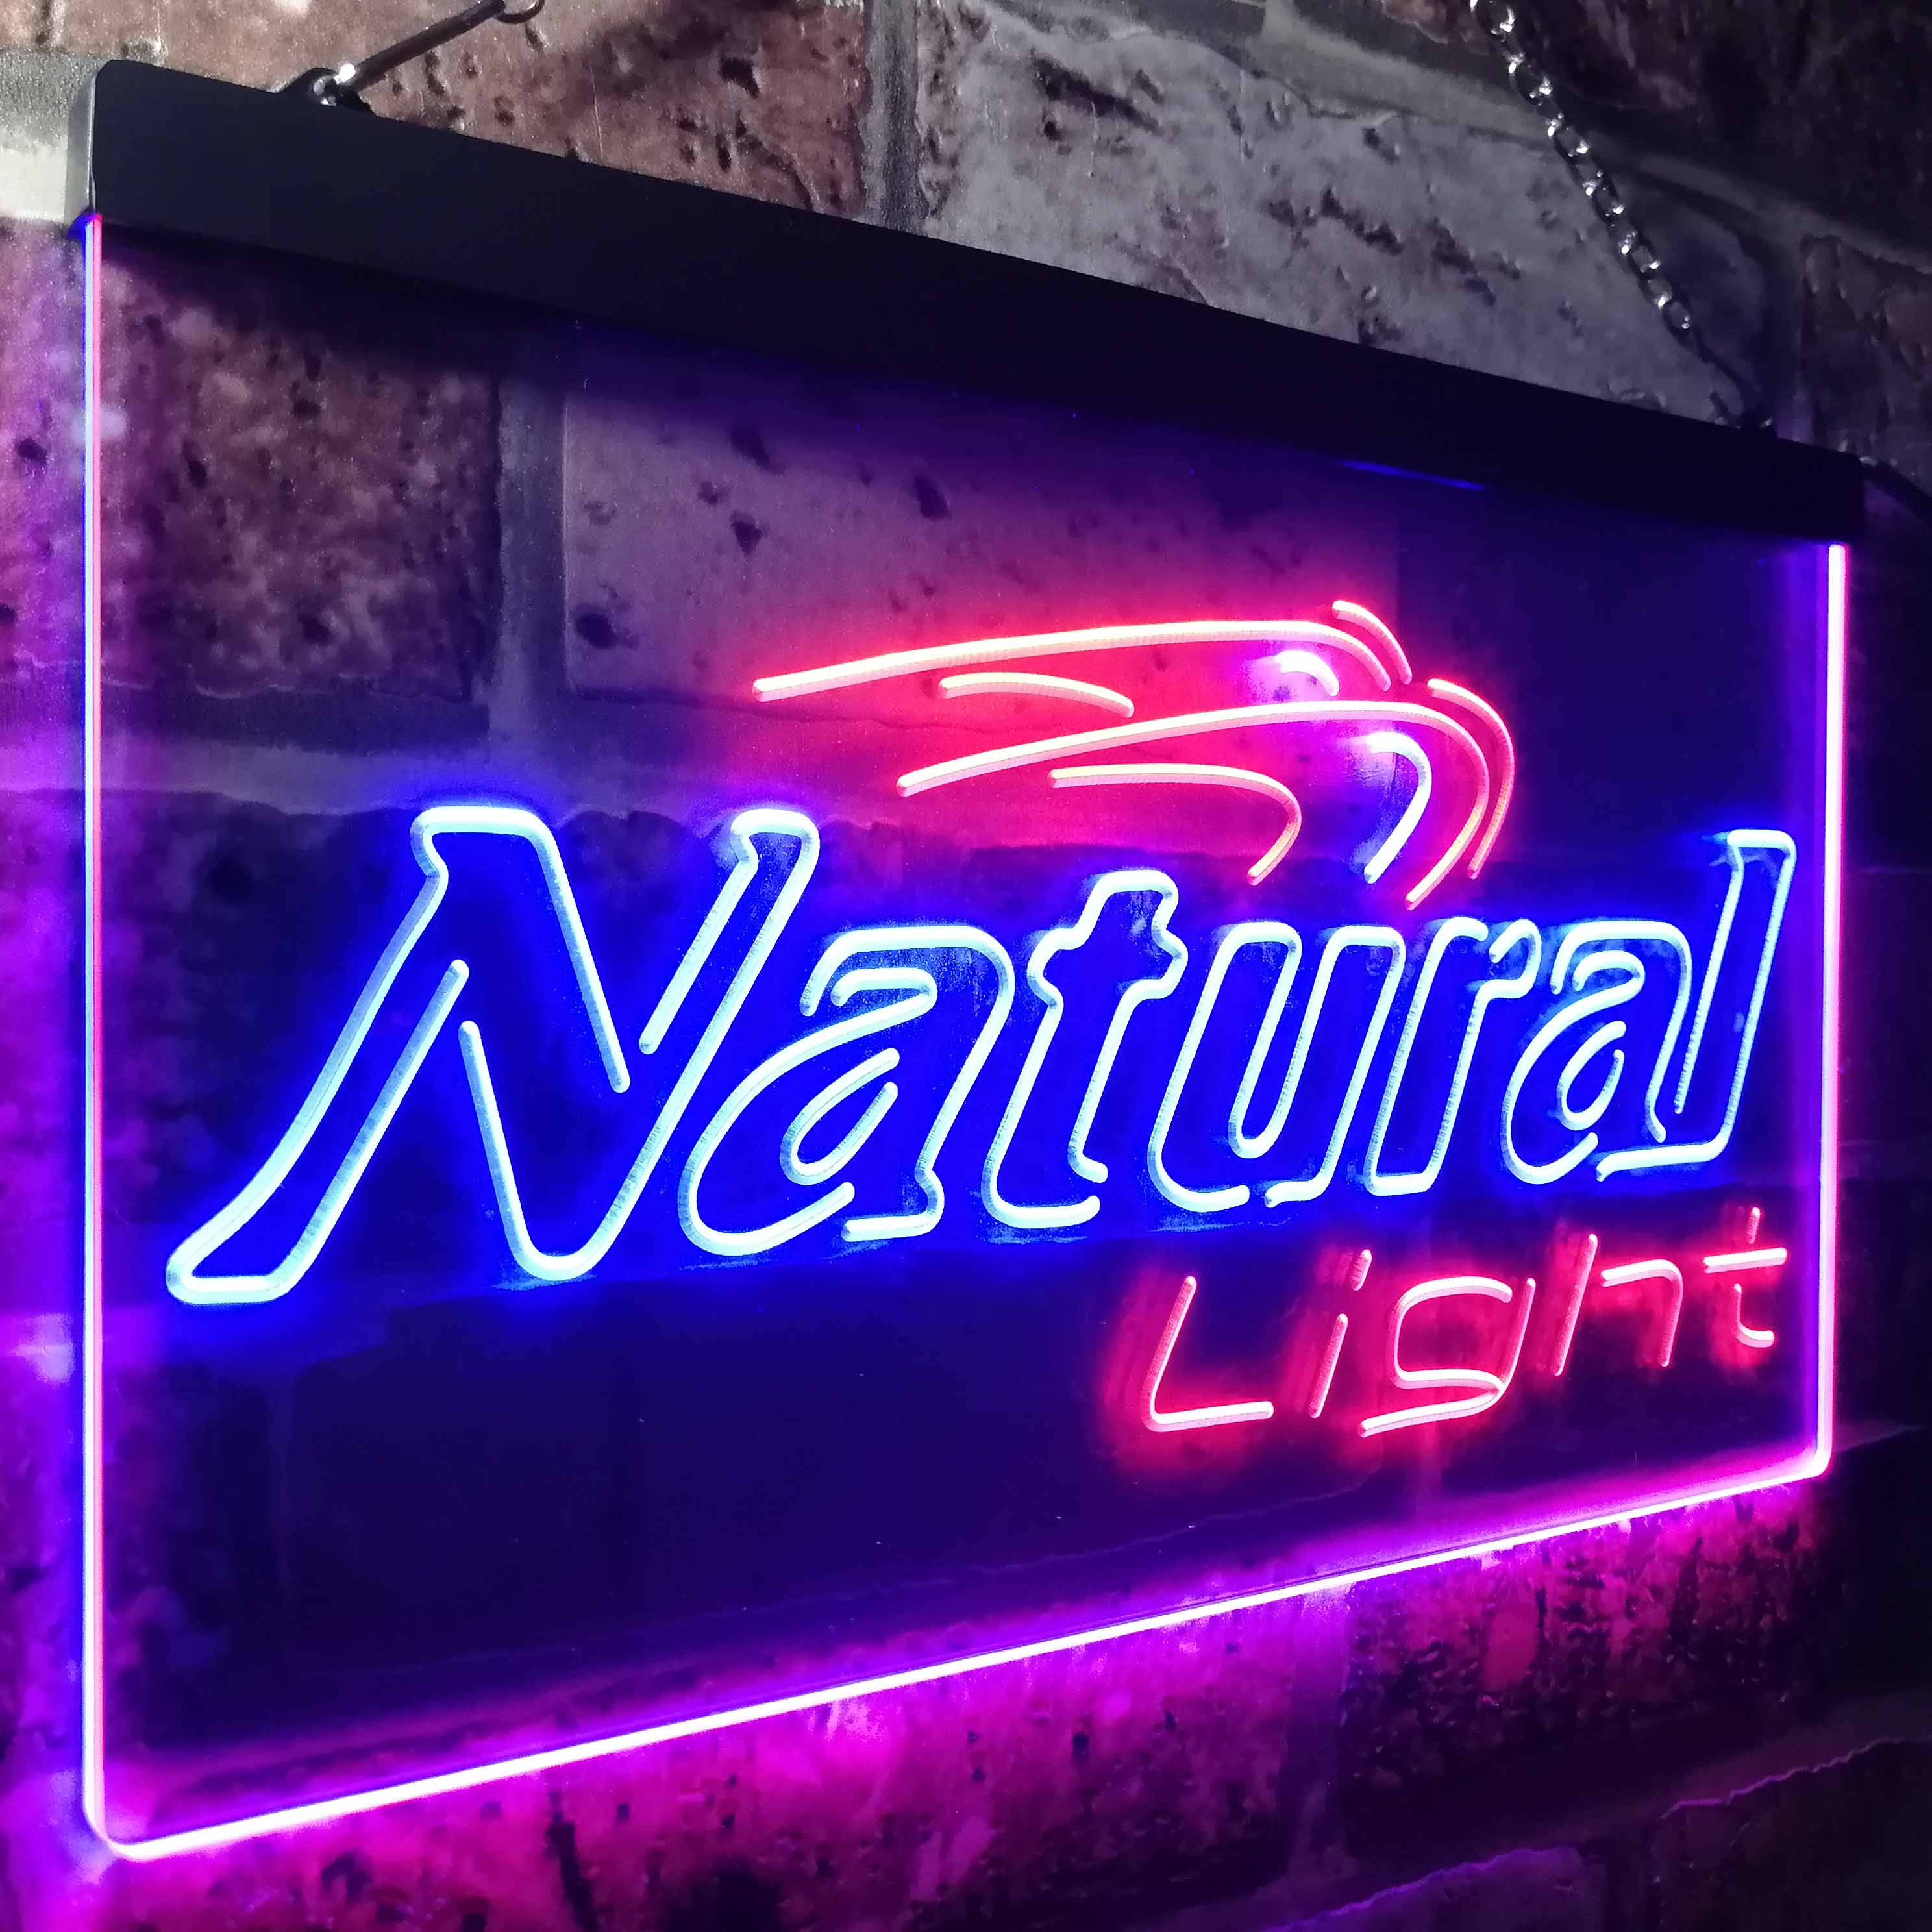 Naturals Lights Beer Bar Gift LED Neon Sign